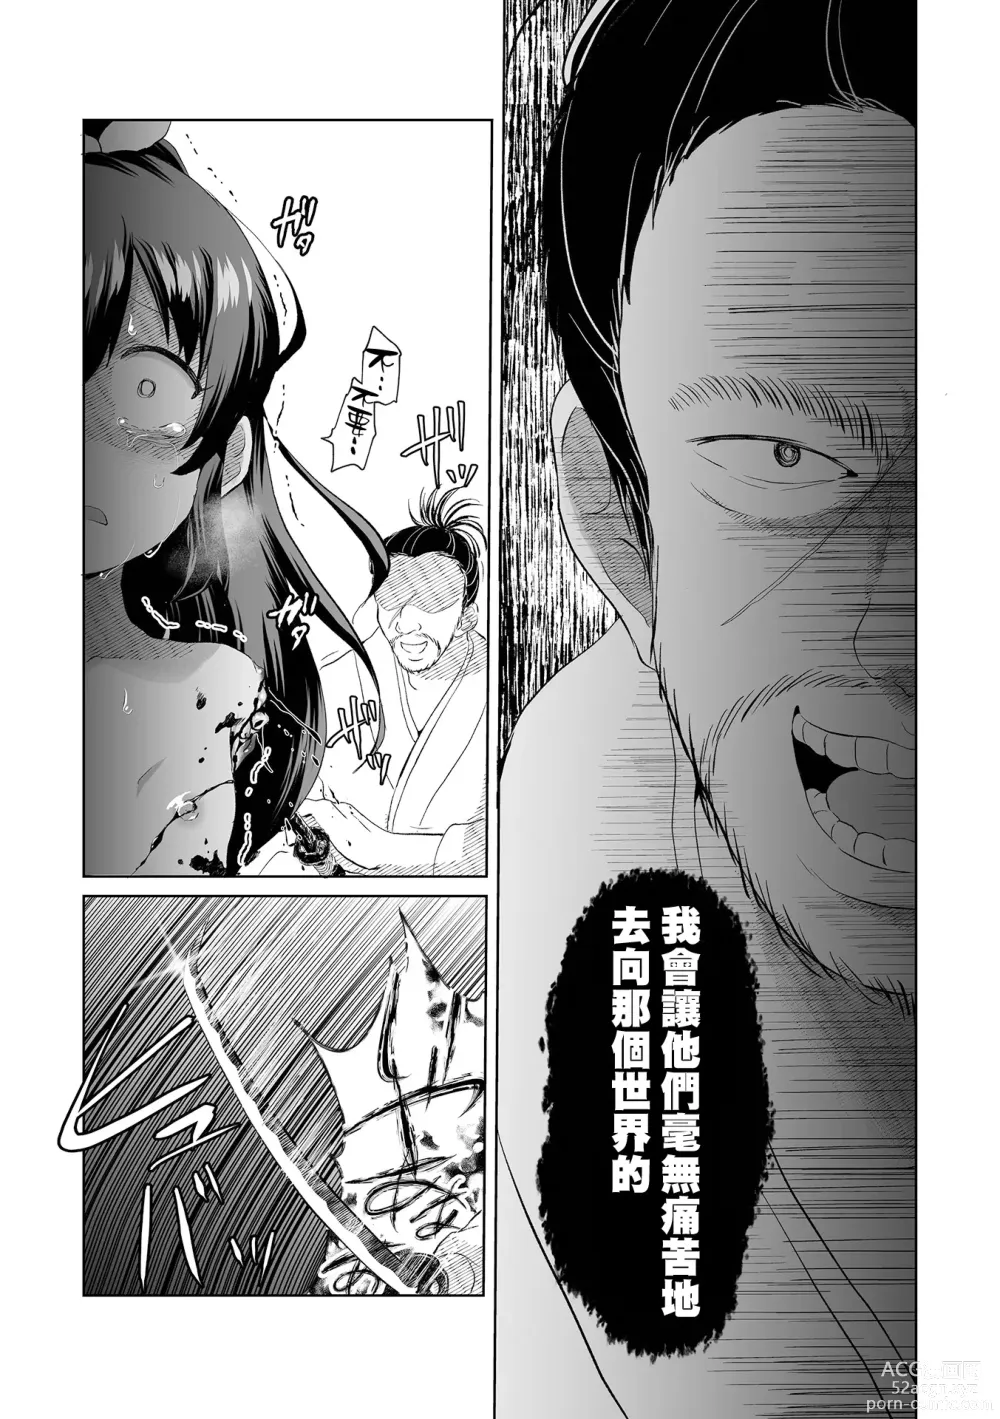 Page 9 of manga Ouka Chiru